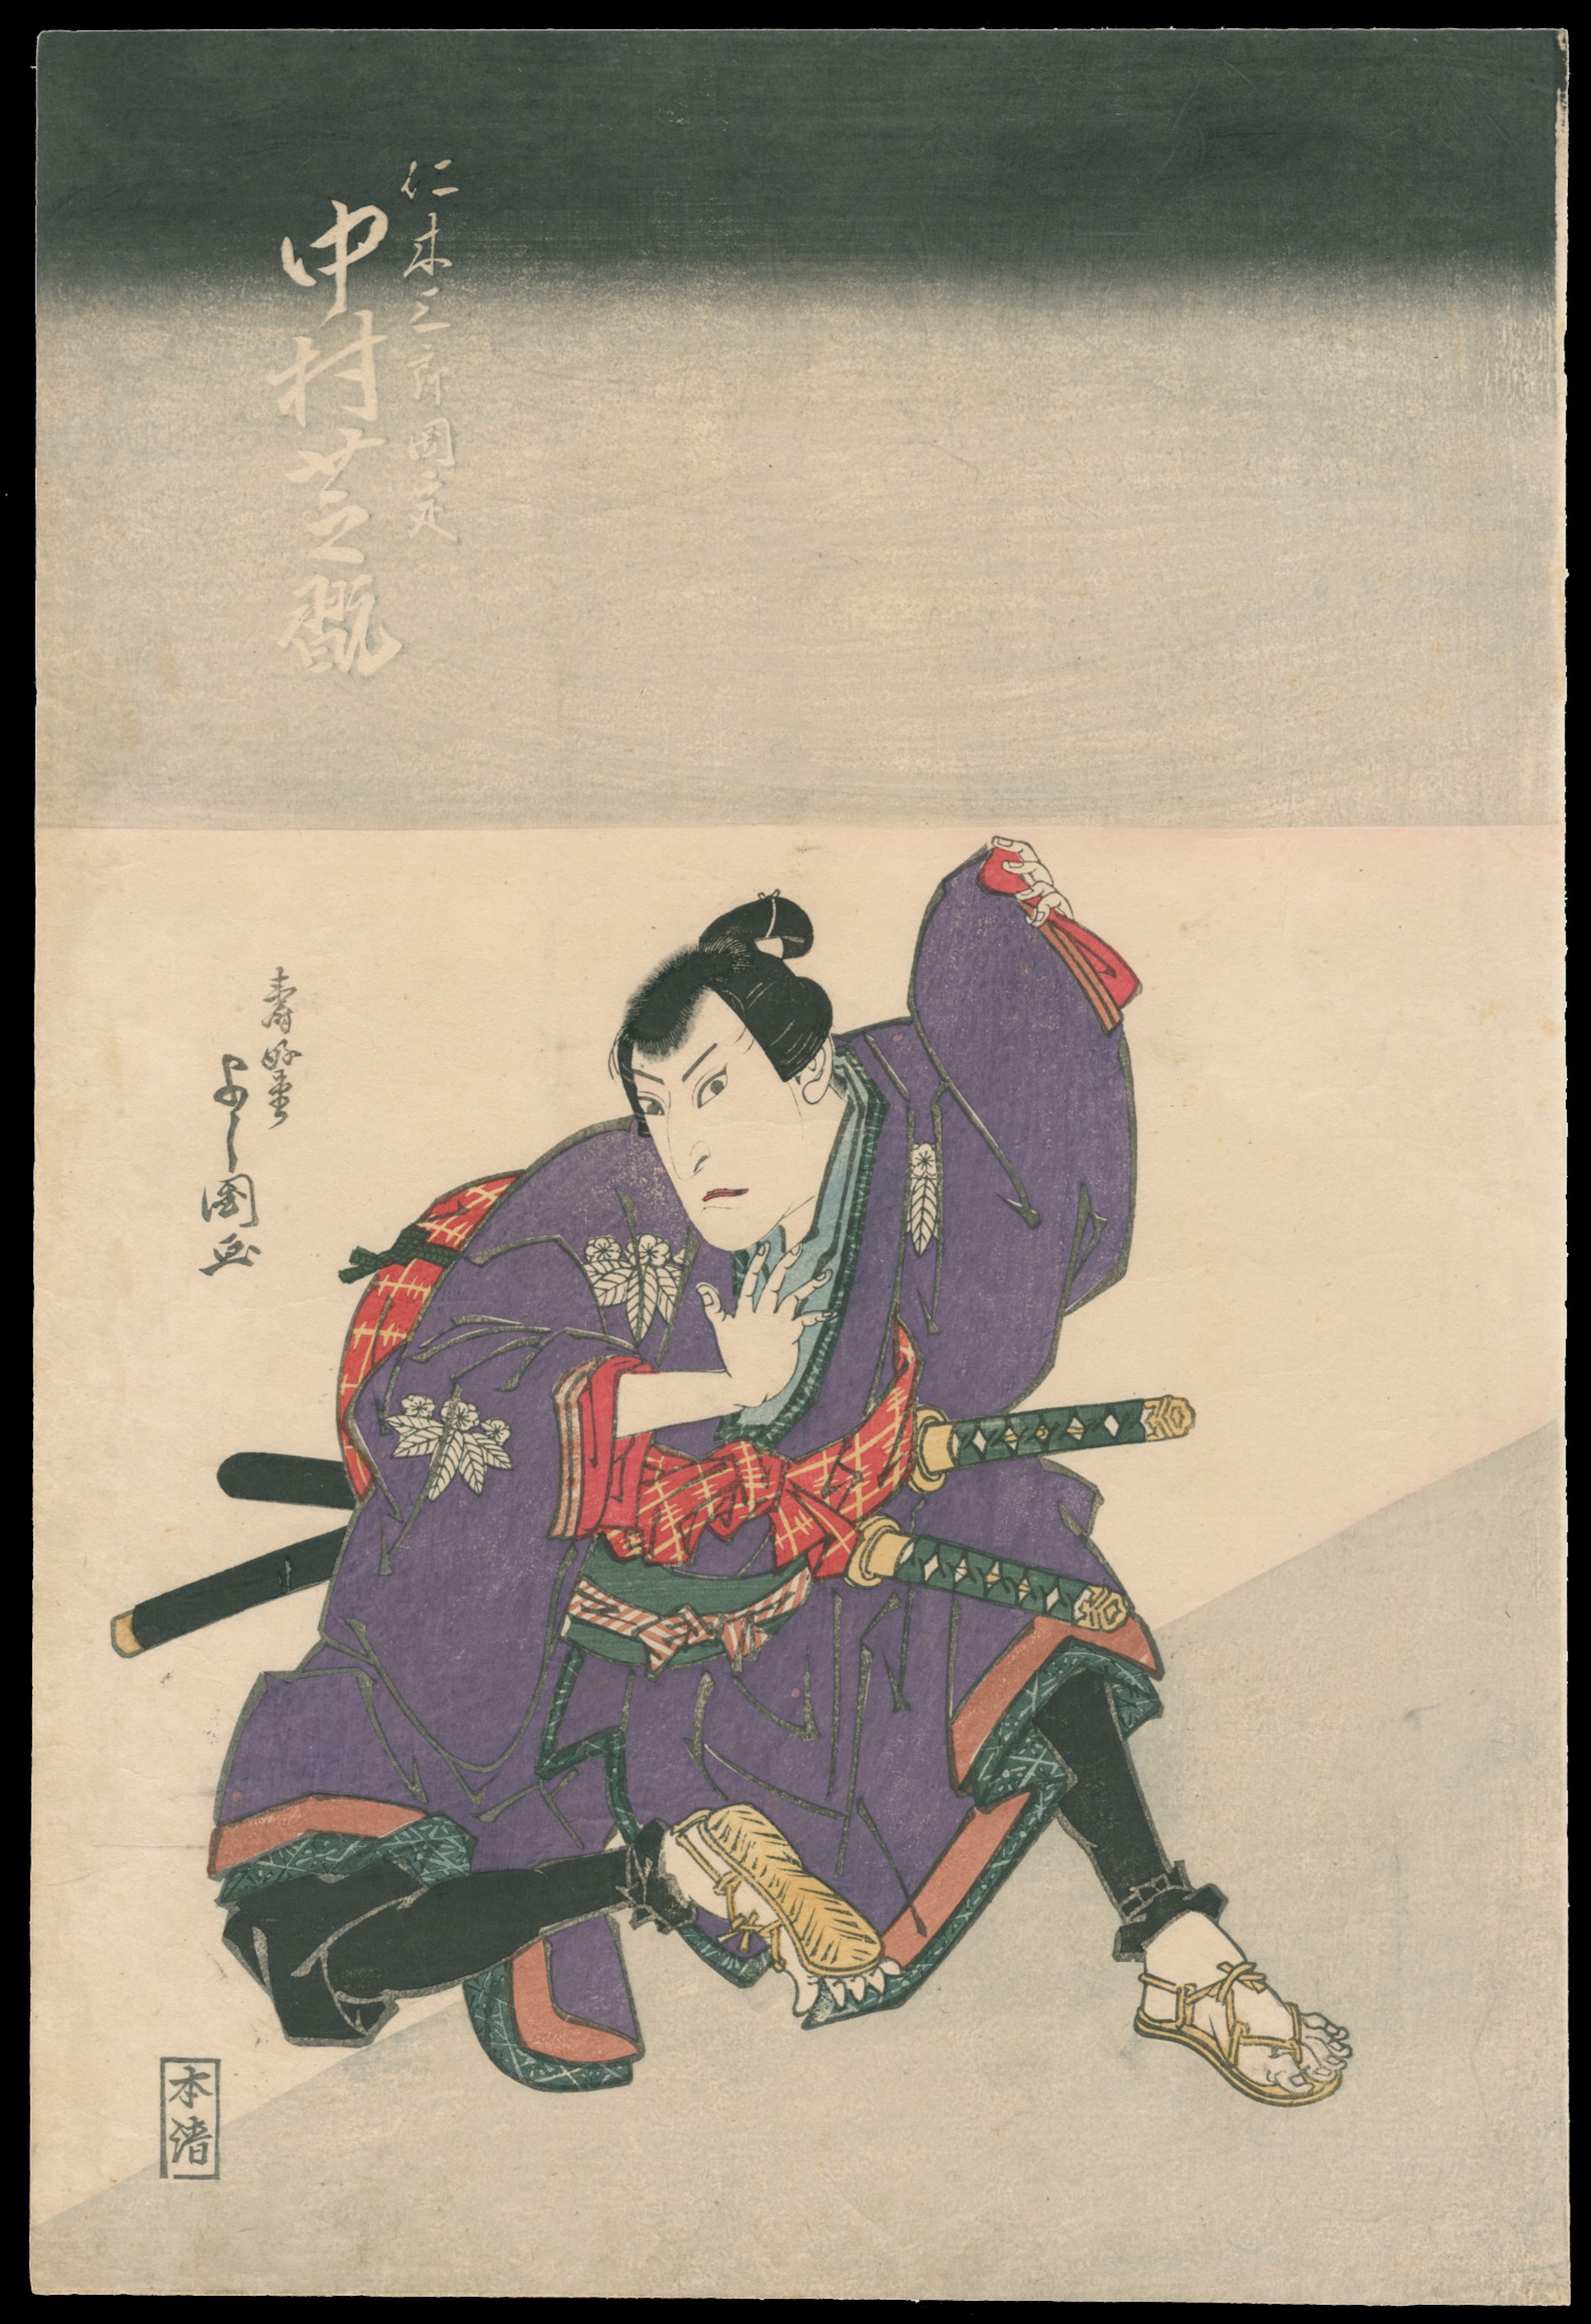 A Scene from the Play "Kinoshitakage Hazoma Gassen" by Shibakuni (1821-26) & Yoshikuni (1803-40)